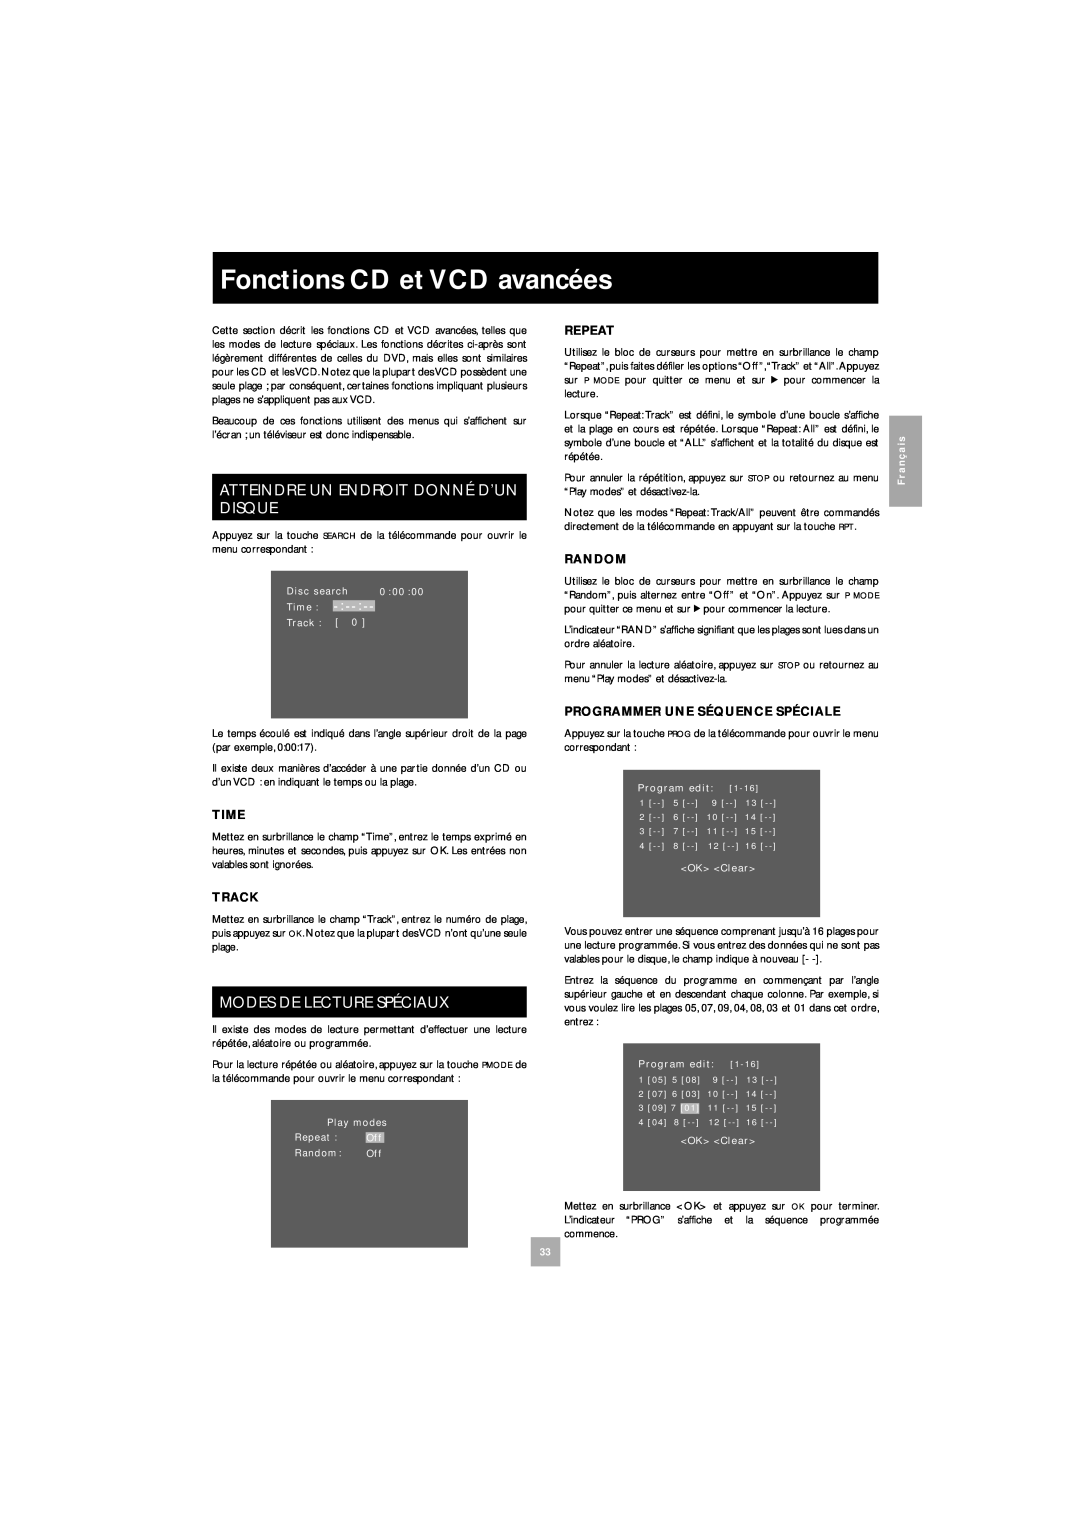 Arcam DV27 manual Fonctions CD et VCD avancées, Atteindre Un Endroit Donné D’Un Disque, Modes De Lecture Spéciaux 